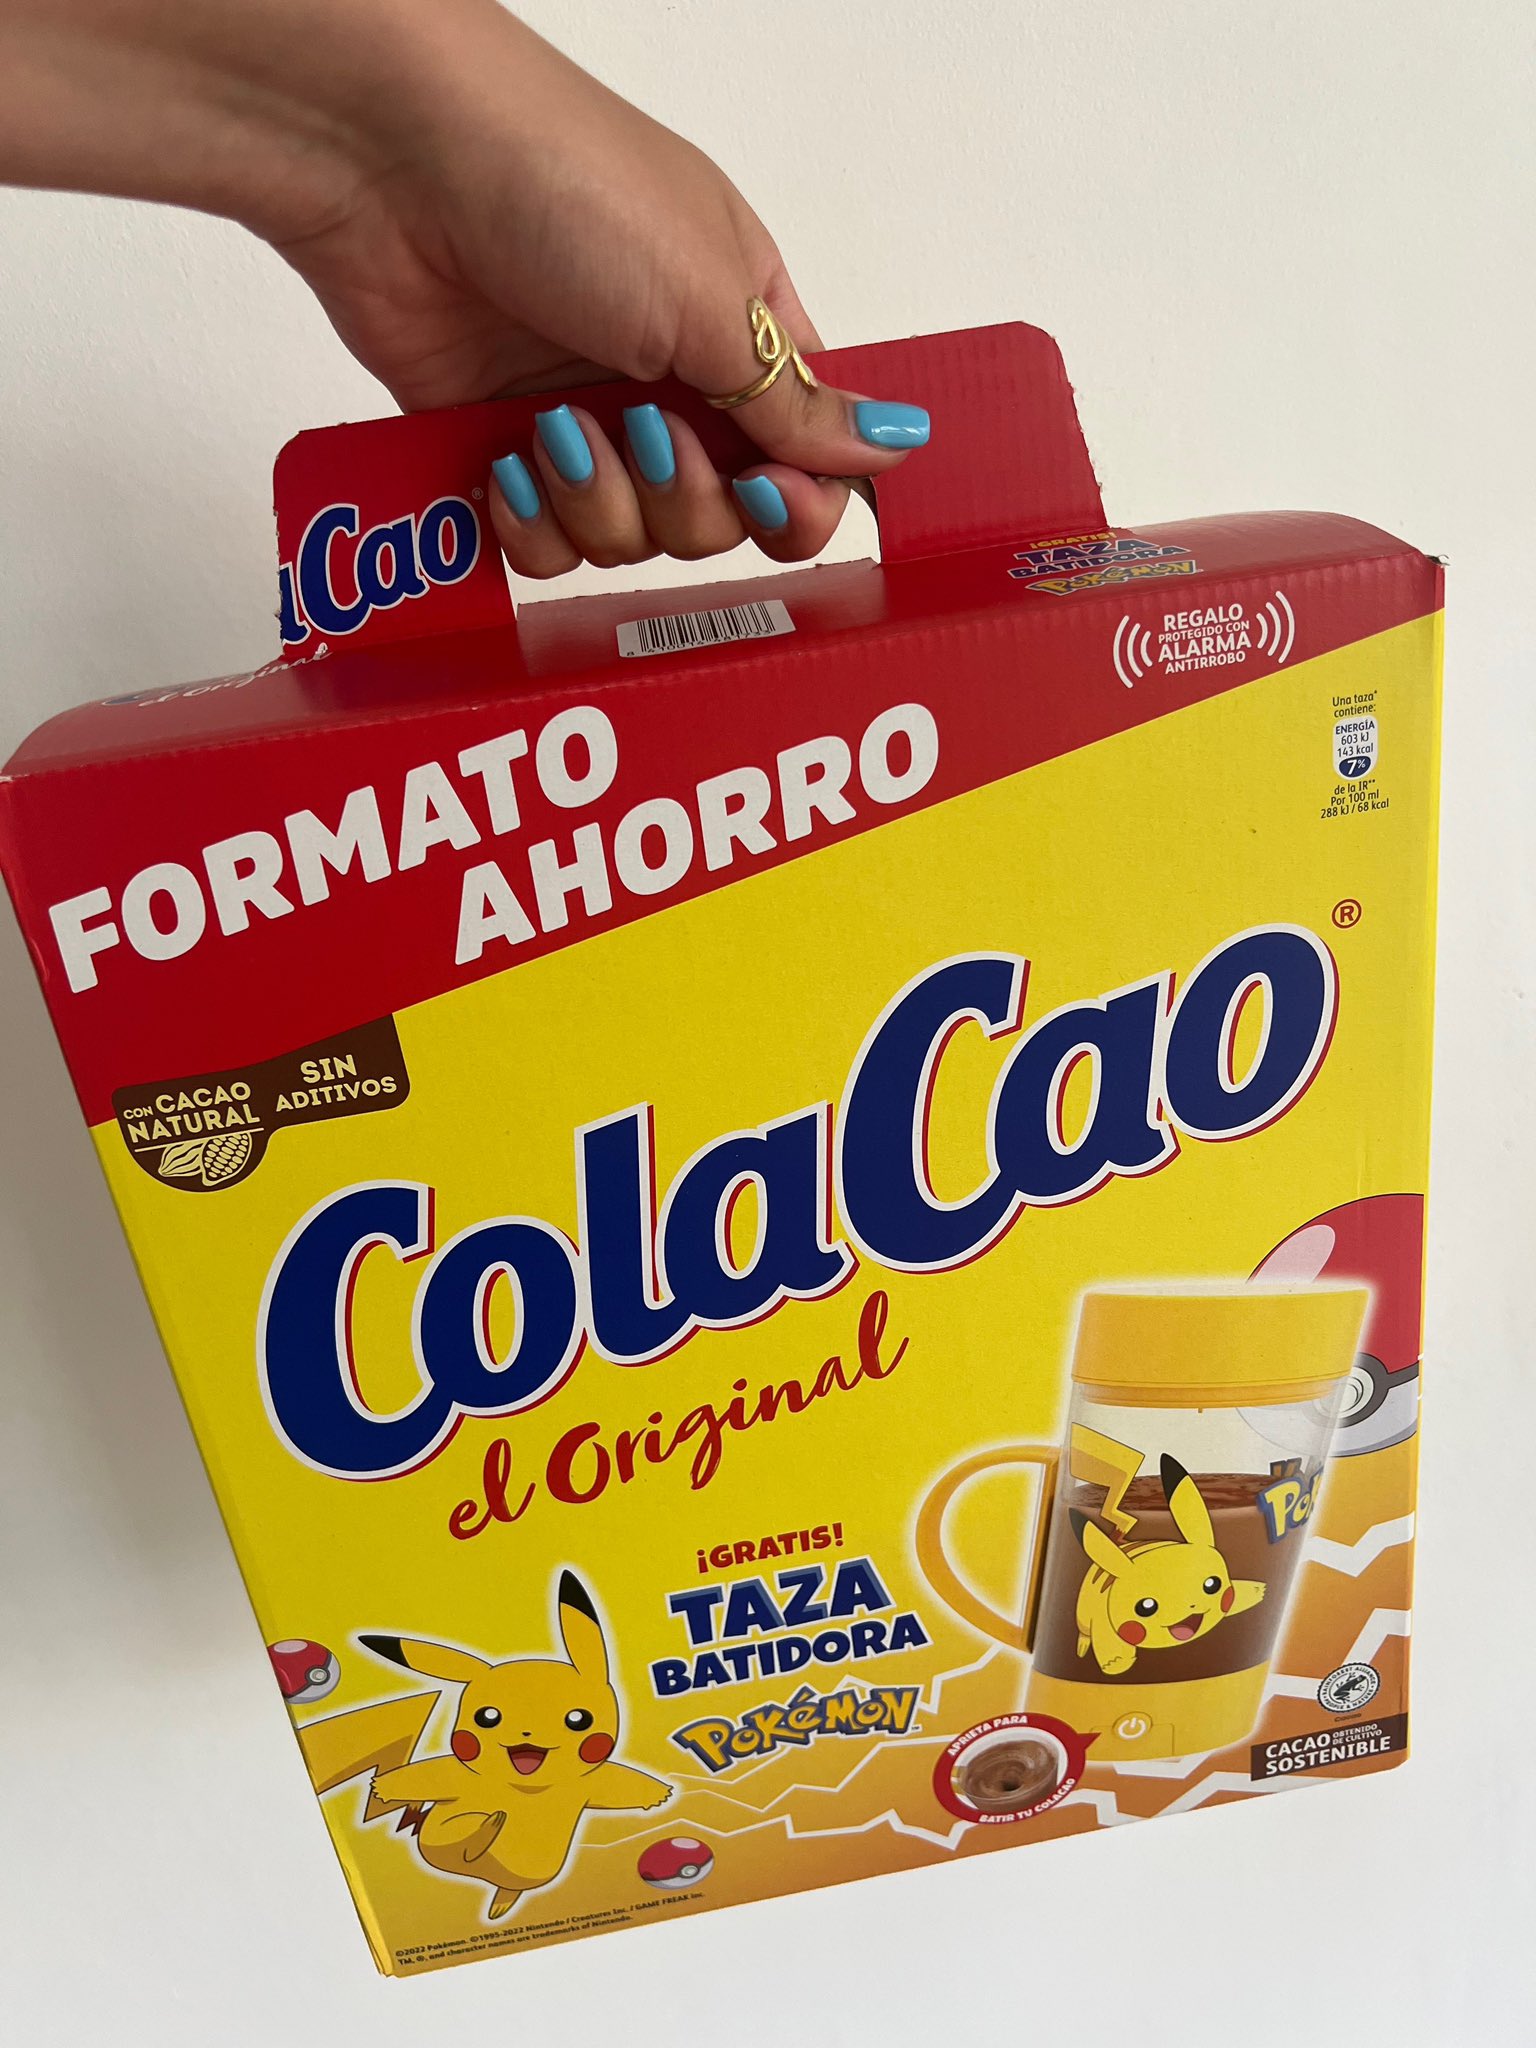 ColaCao on X: aaaaaaaaaa ya la tengo  / X